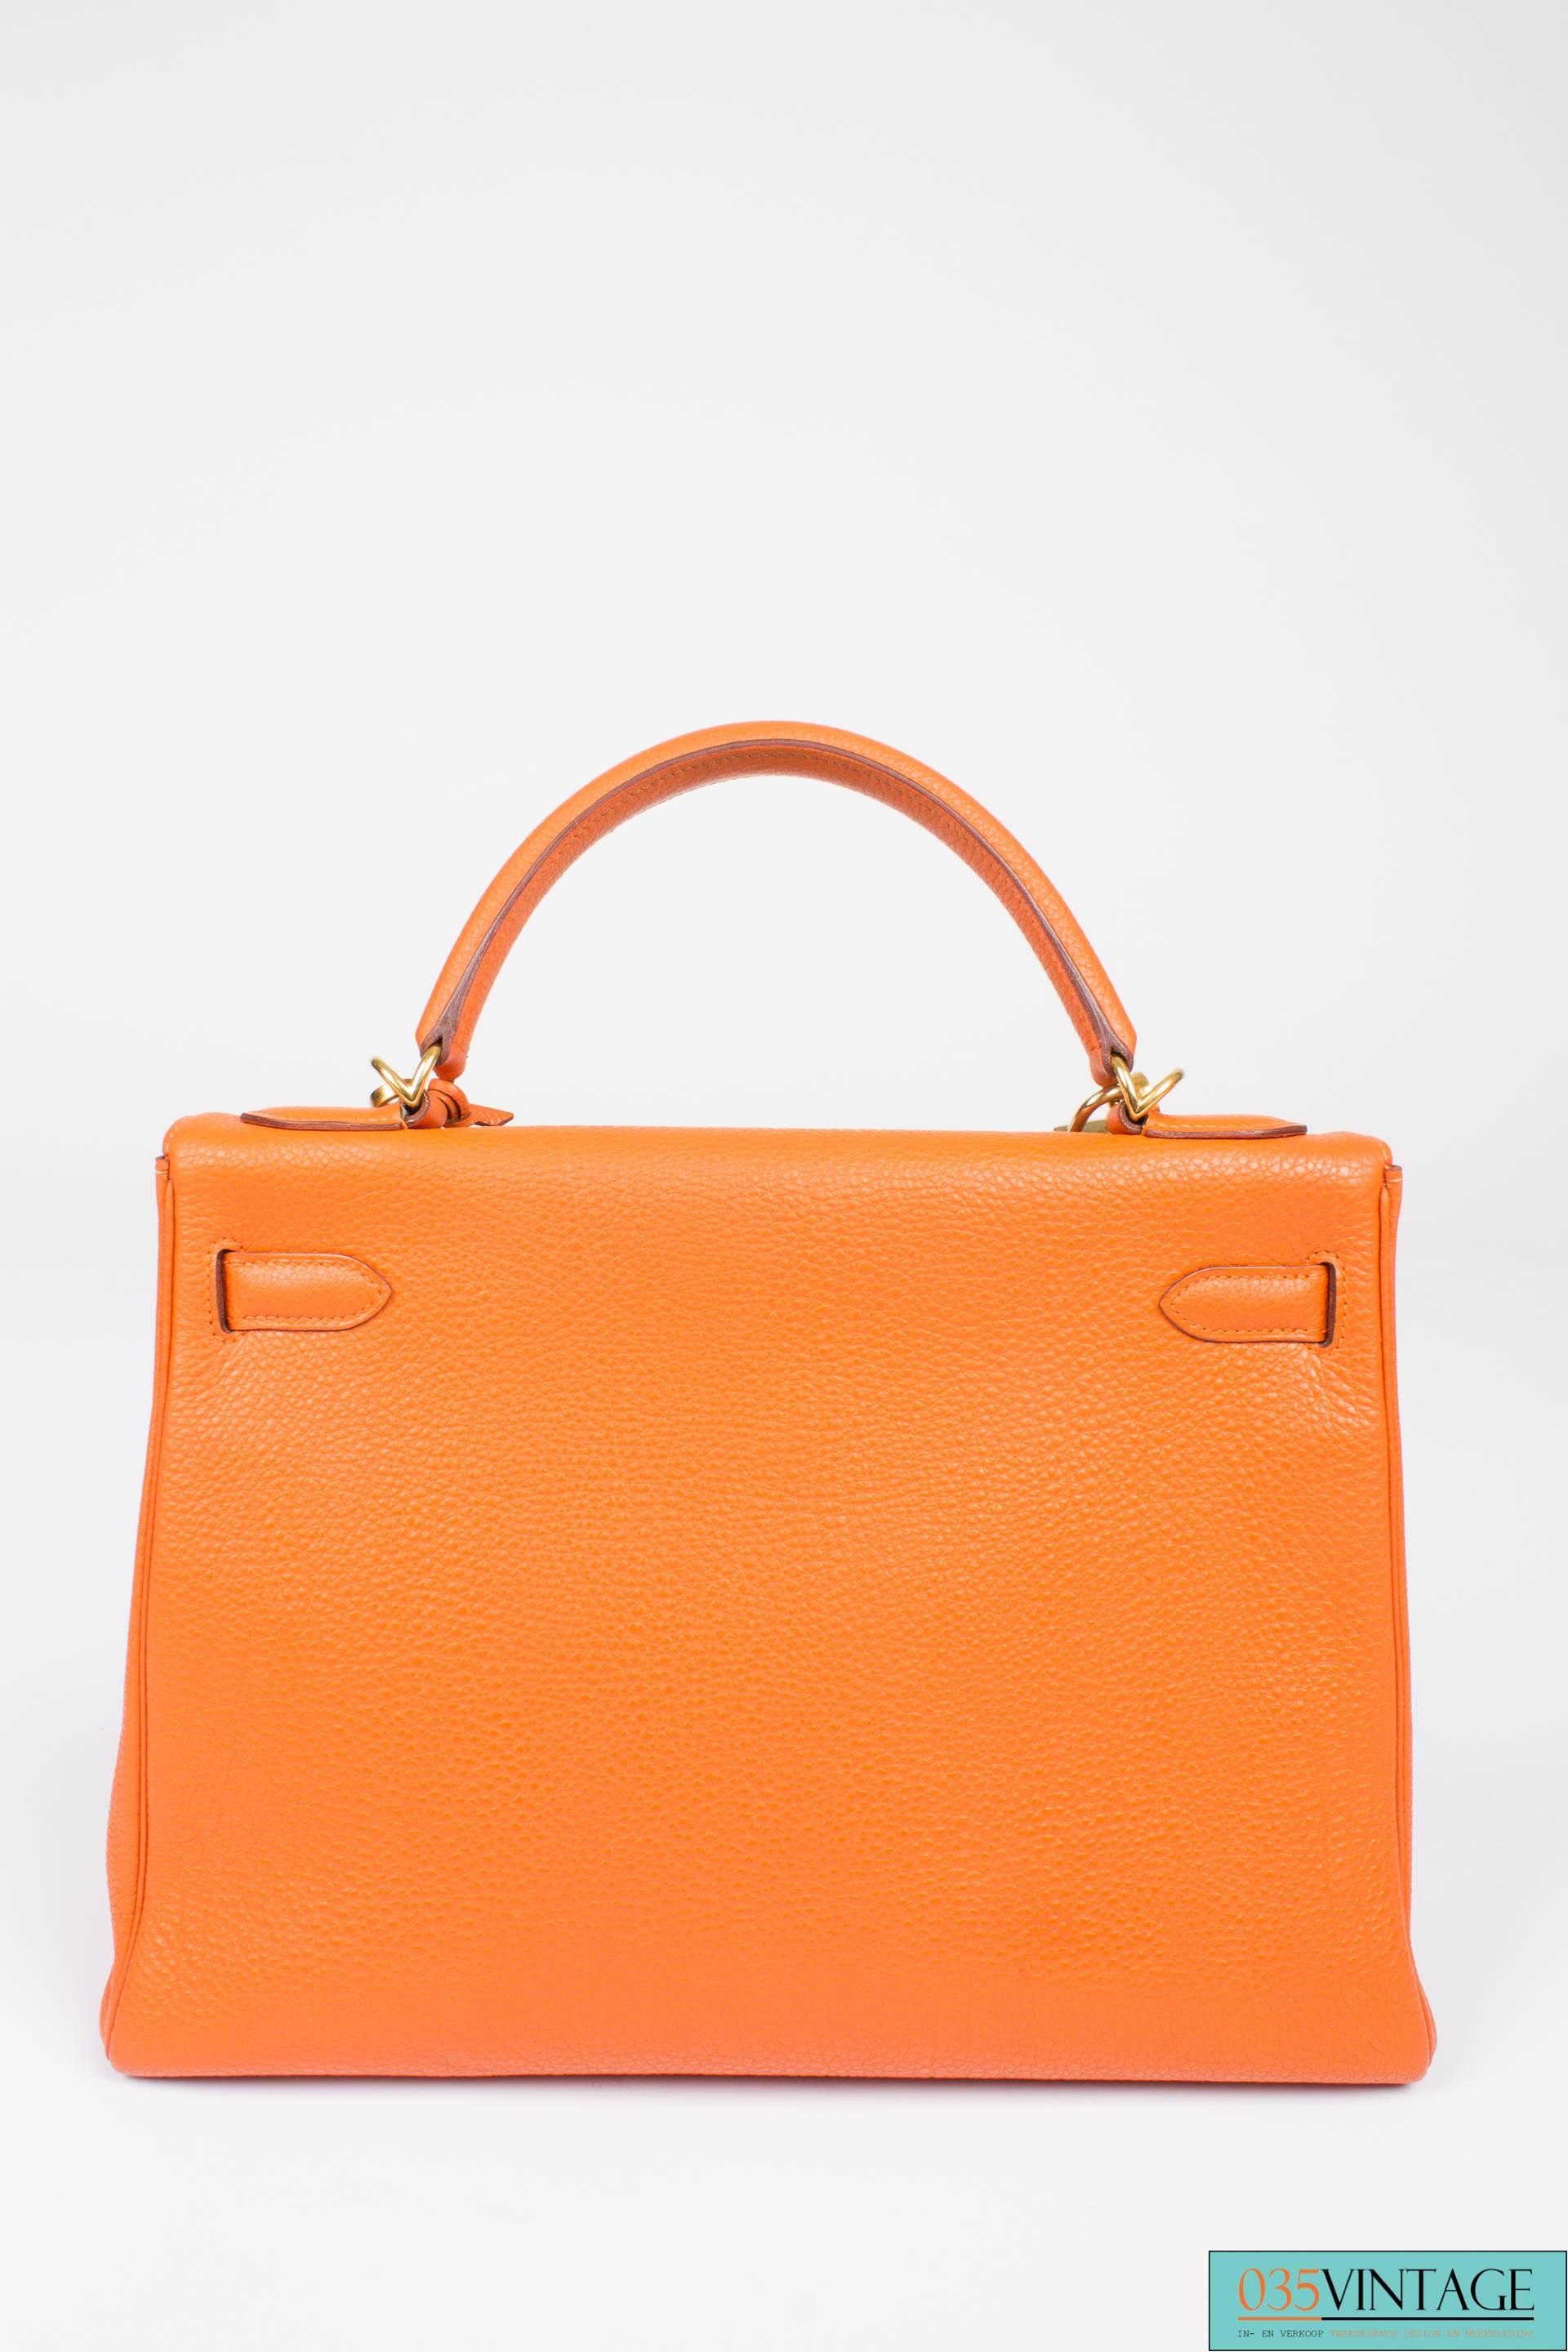 Herme�̀s Kelly Bag 32 Togo Leather - orange H & wallet 3